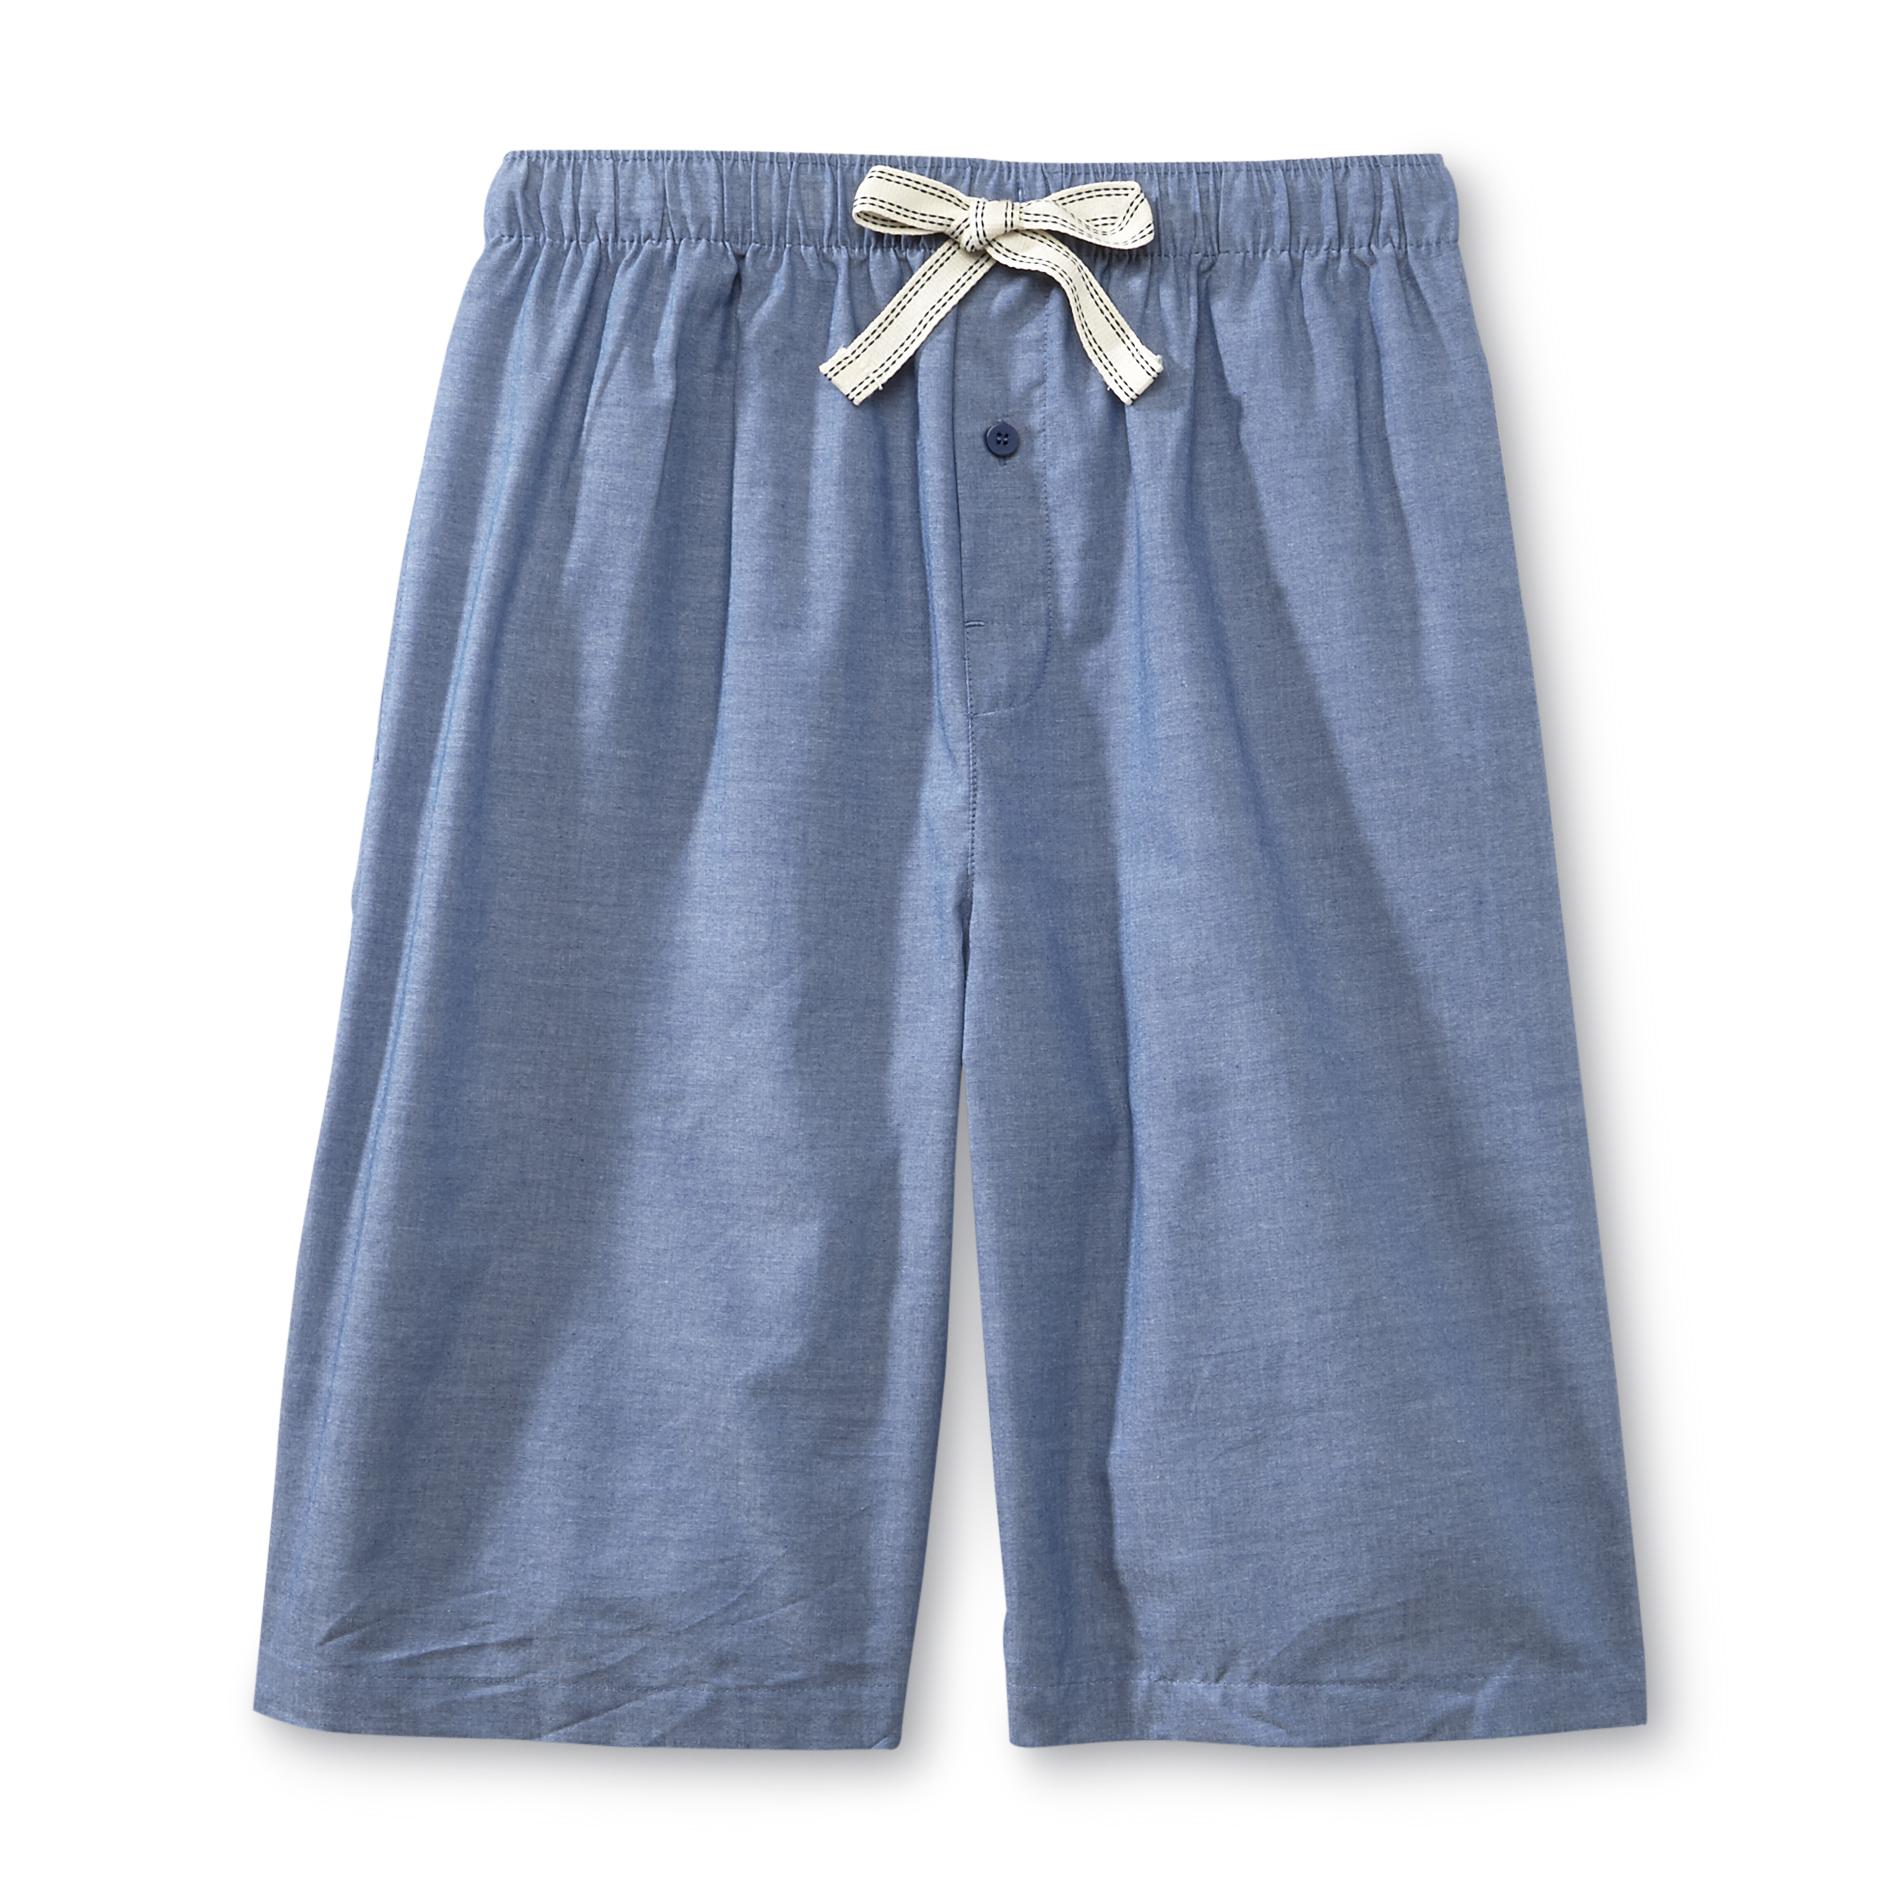 Basic Editions Men's Chambray Pajama Shorts